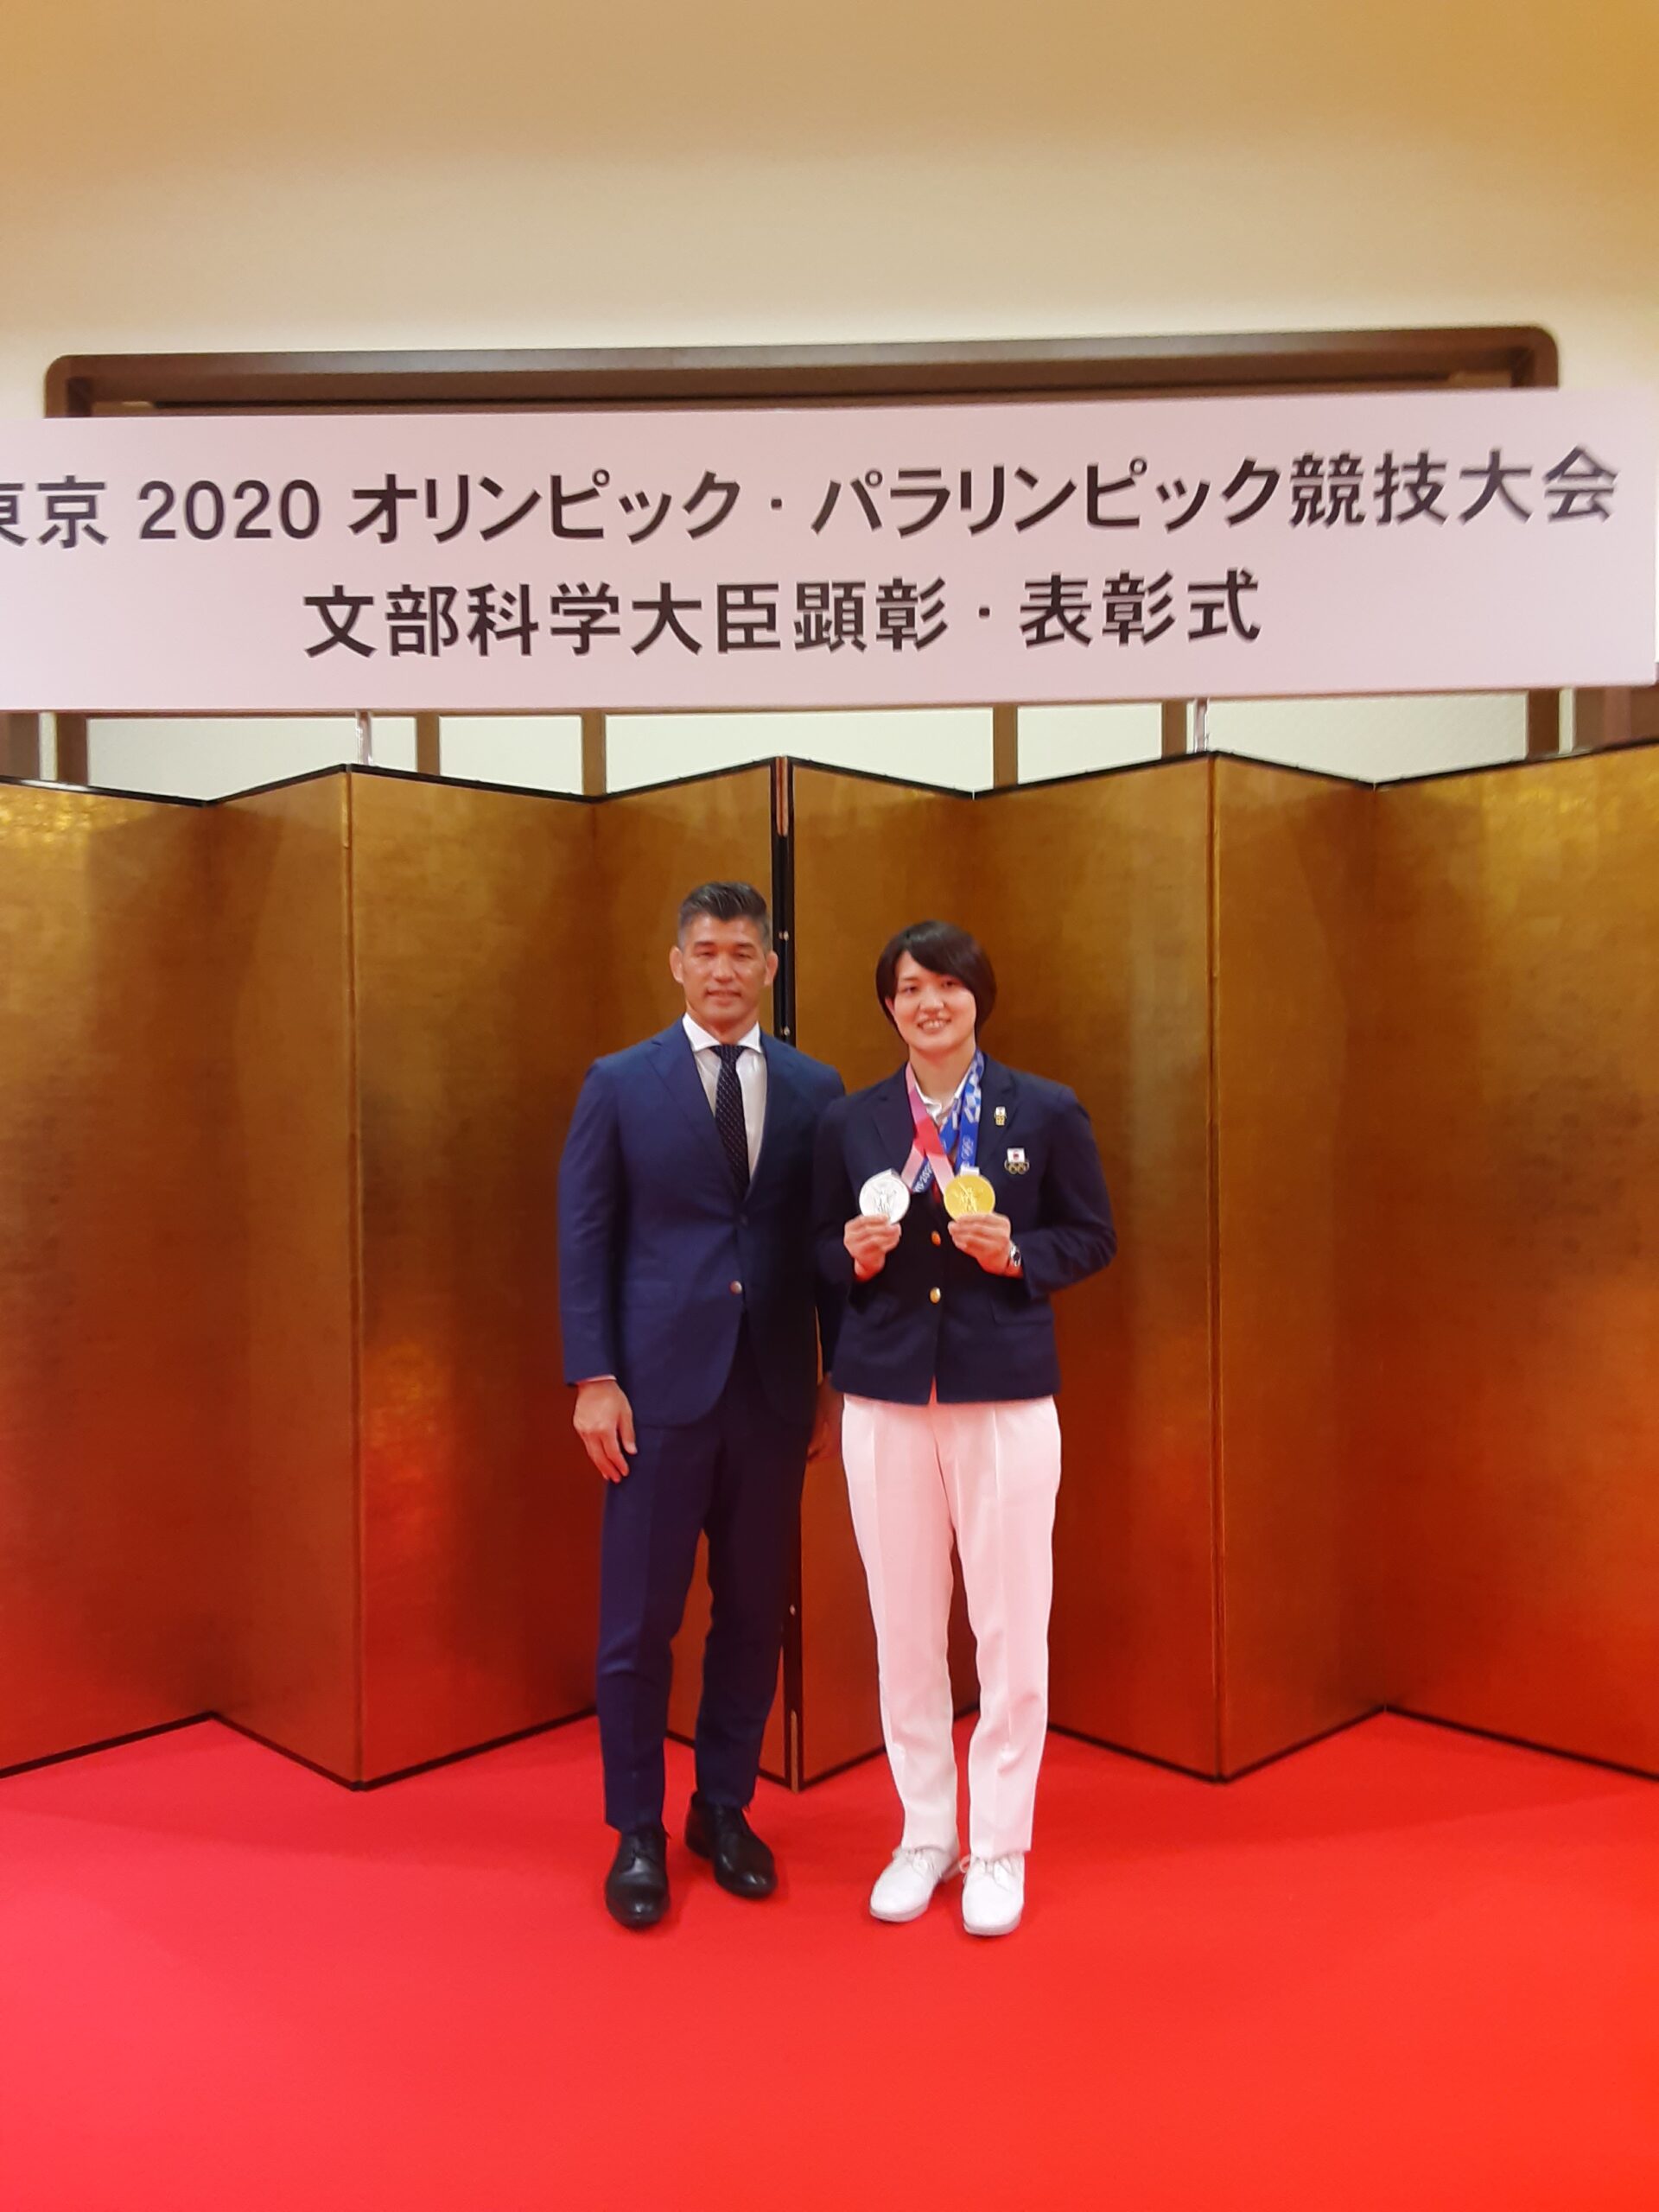 東京2020オリンピック・パラリンピック競技大会 文部科学大臣顕彰